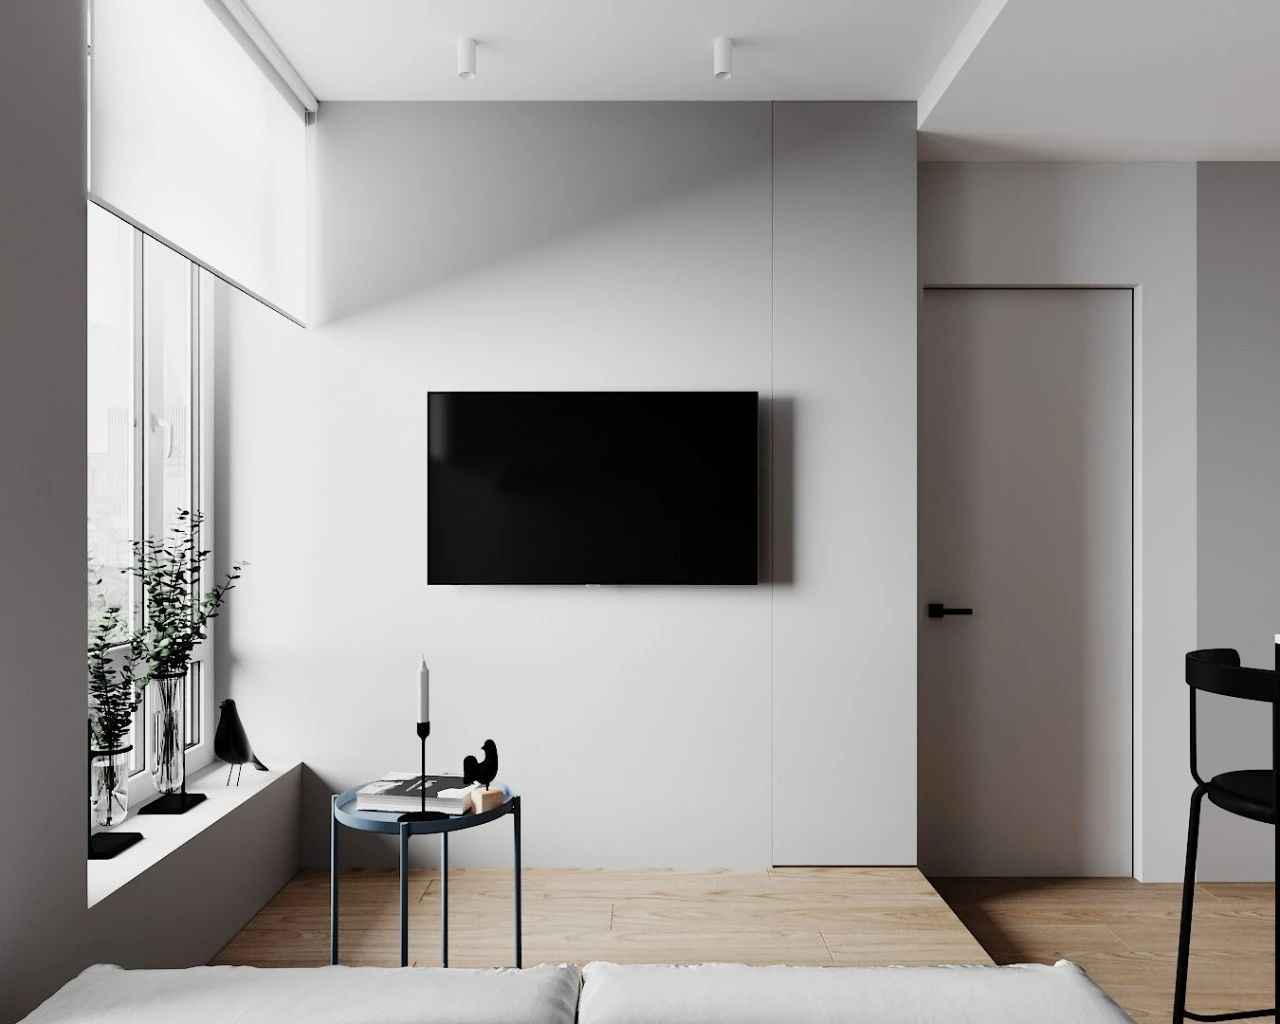 30㎡小户型公寓电视墙装修效果图